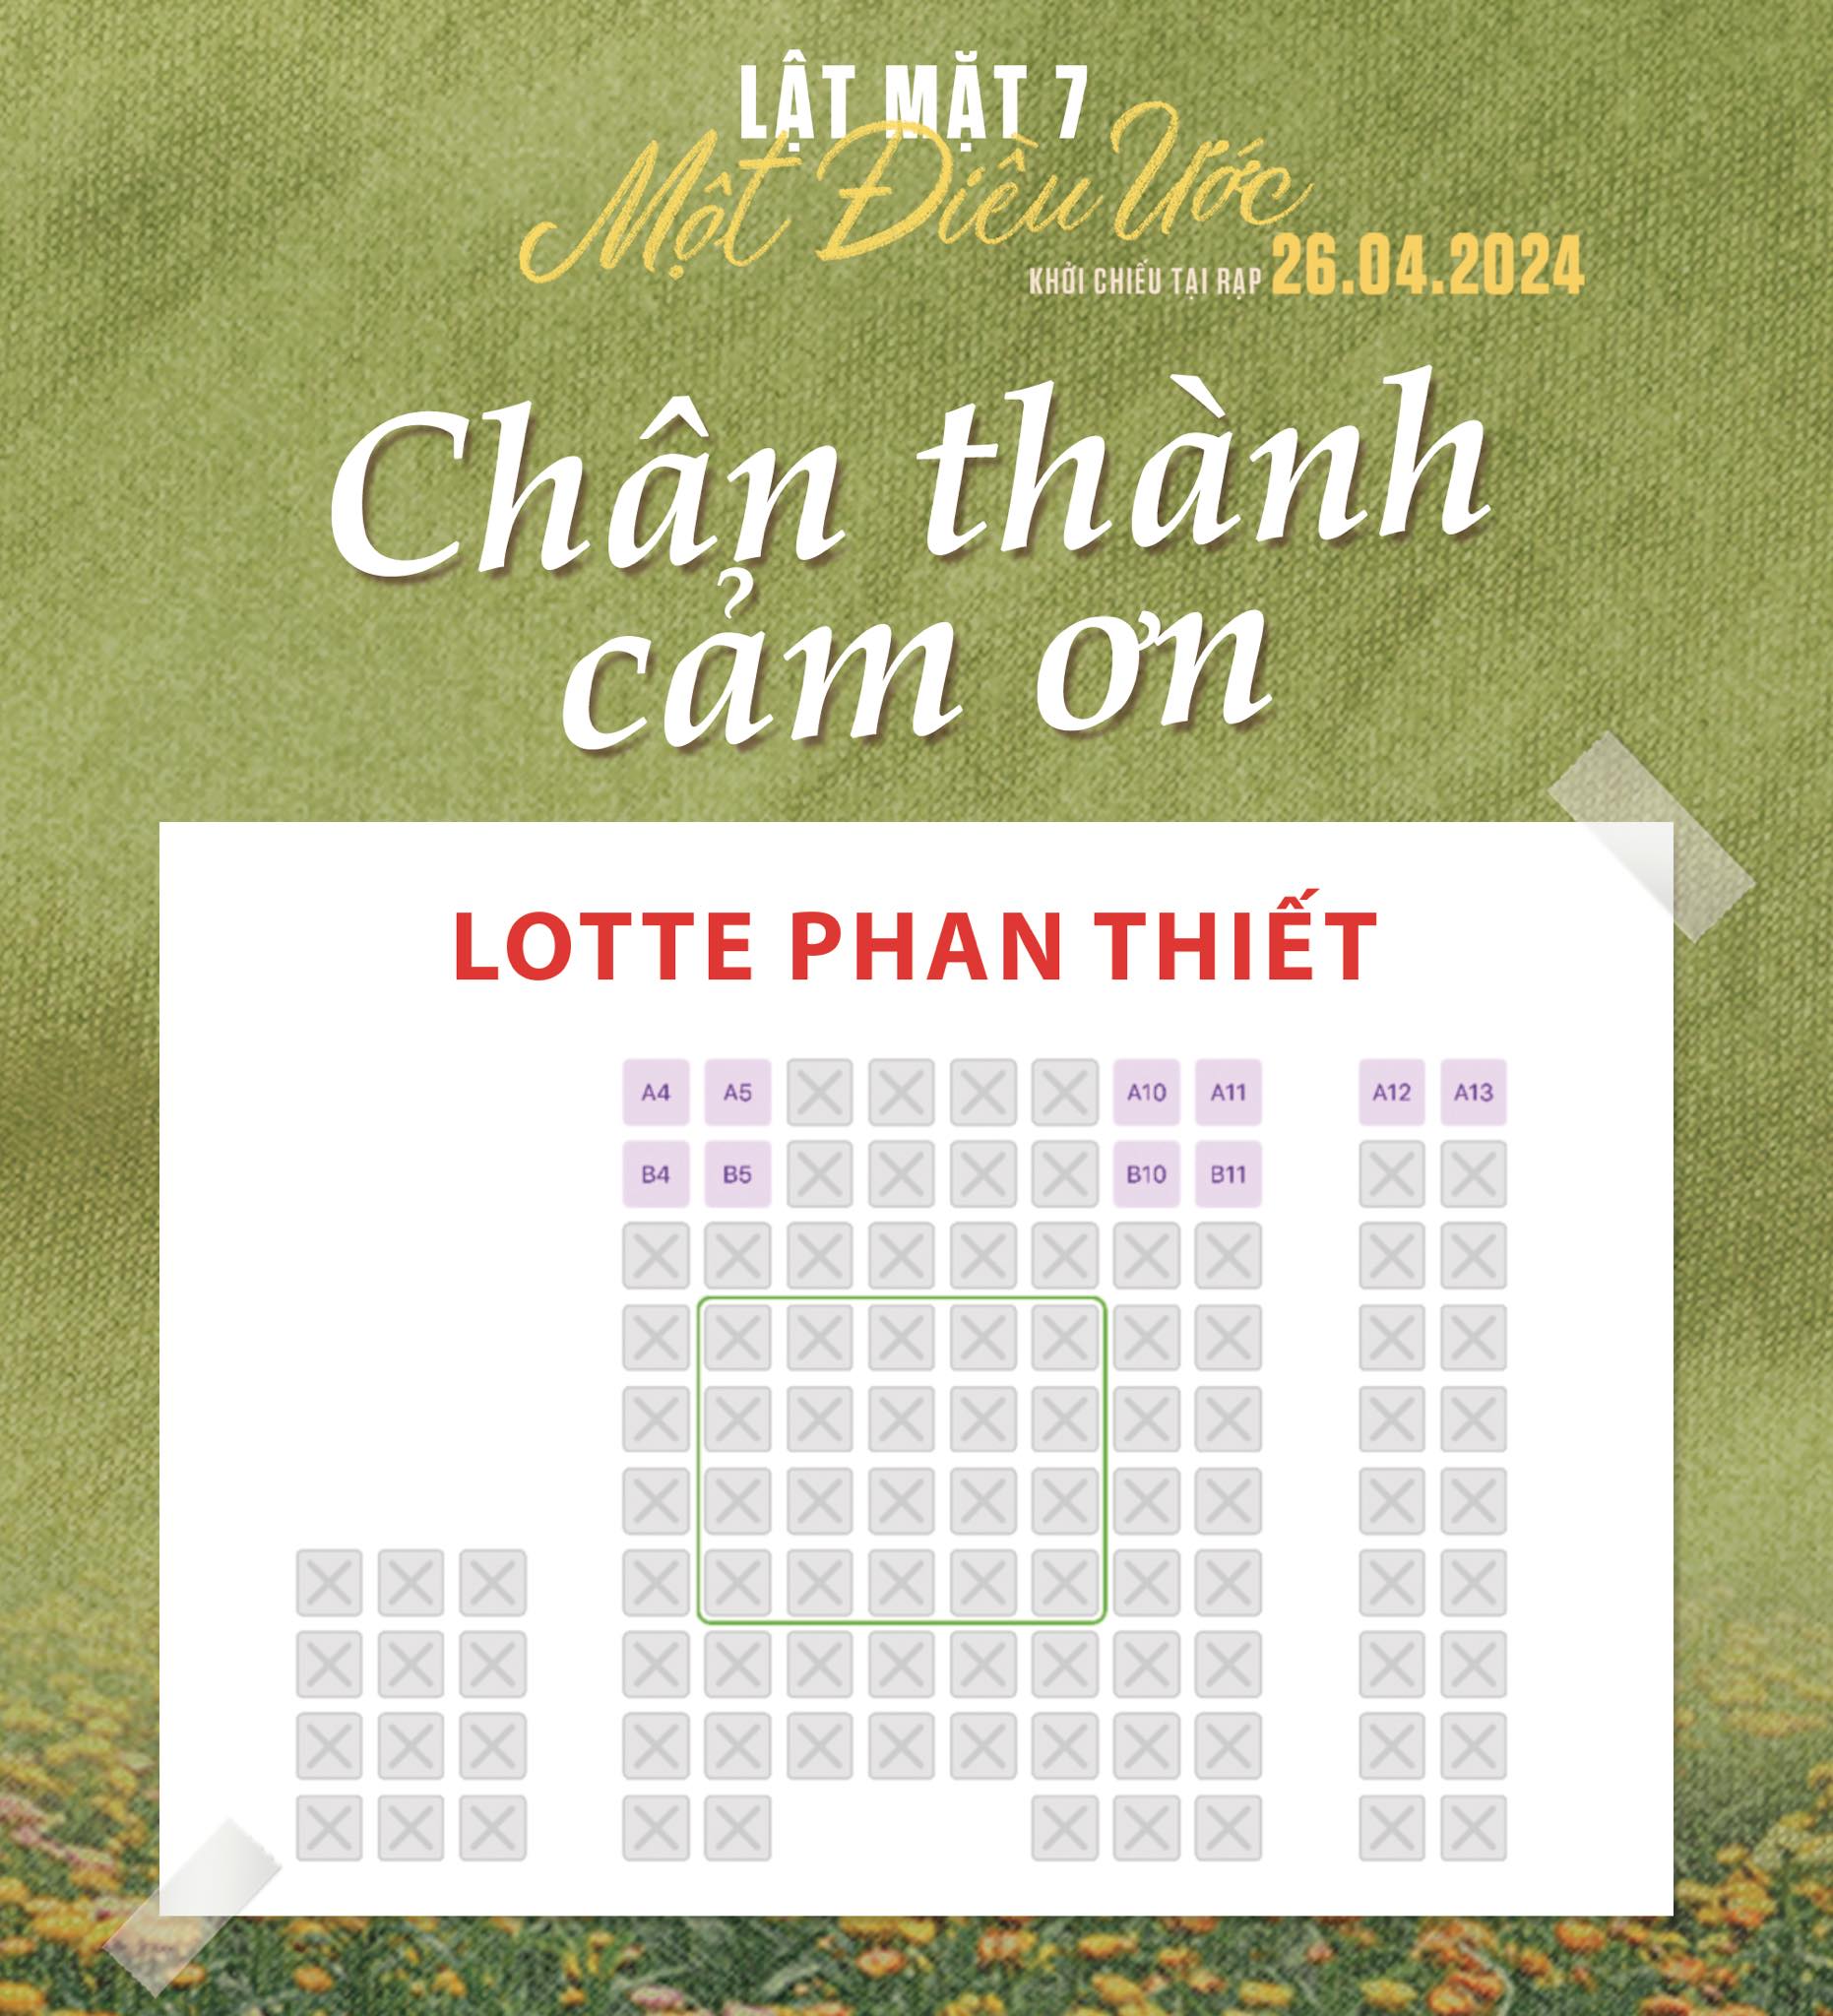 Lật Mặt 7 mới chiếu đã thống trị phòng vé Việt, doanh thu trong ngày gấp 7 lần phim 18+ của Thái Hòa- Ảnh 2.